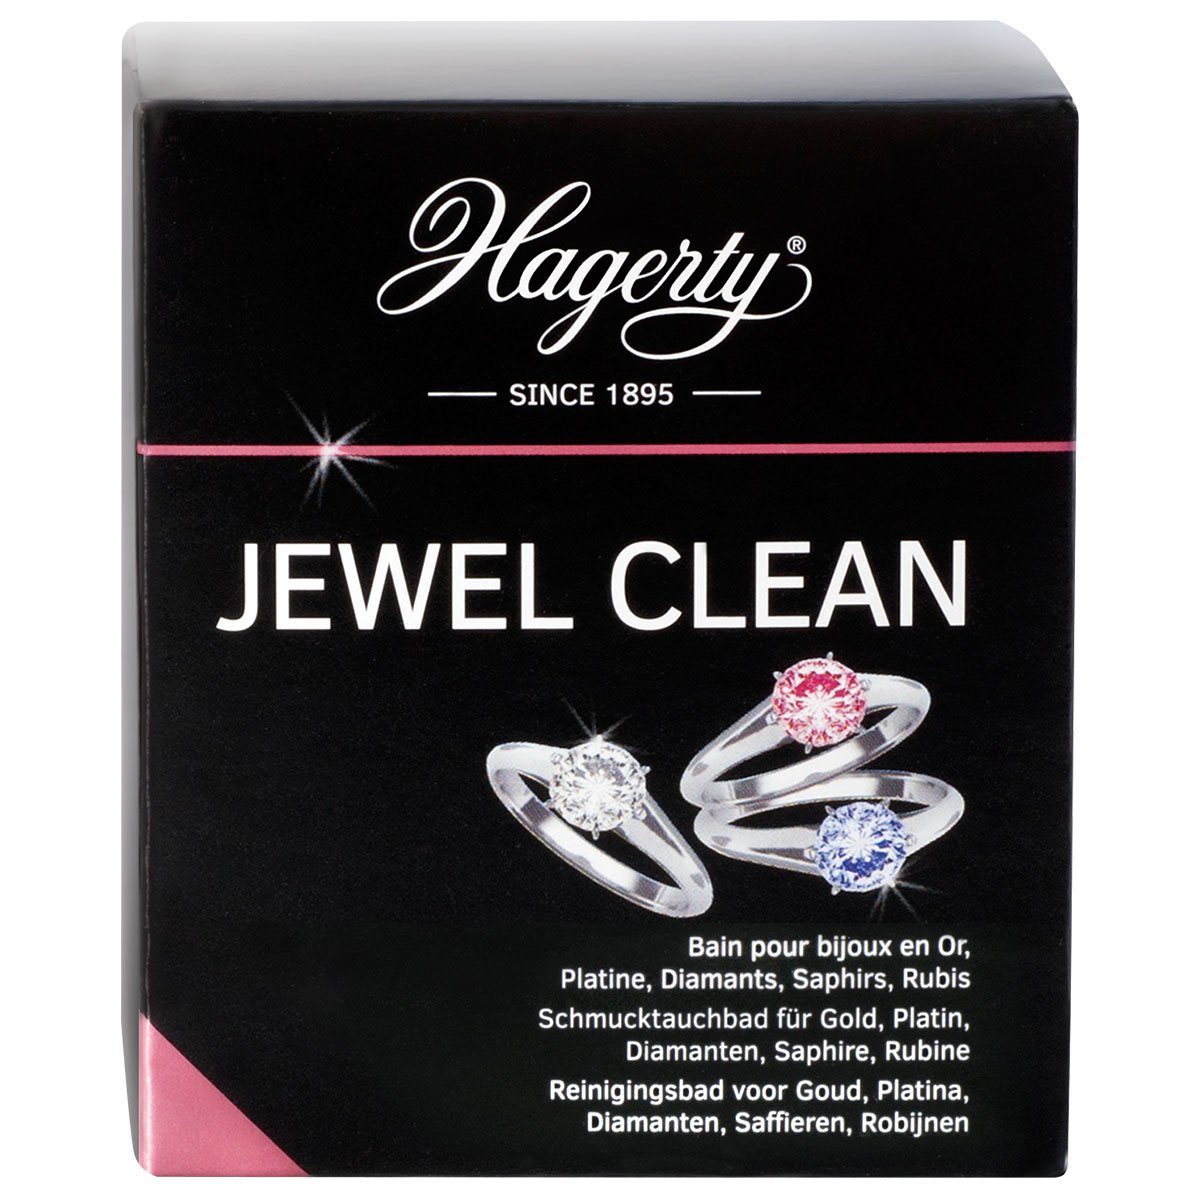 Hagerty Jewel Clean, Tauchbad für Juwelen, 170 ml